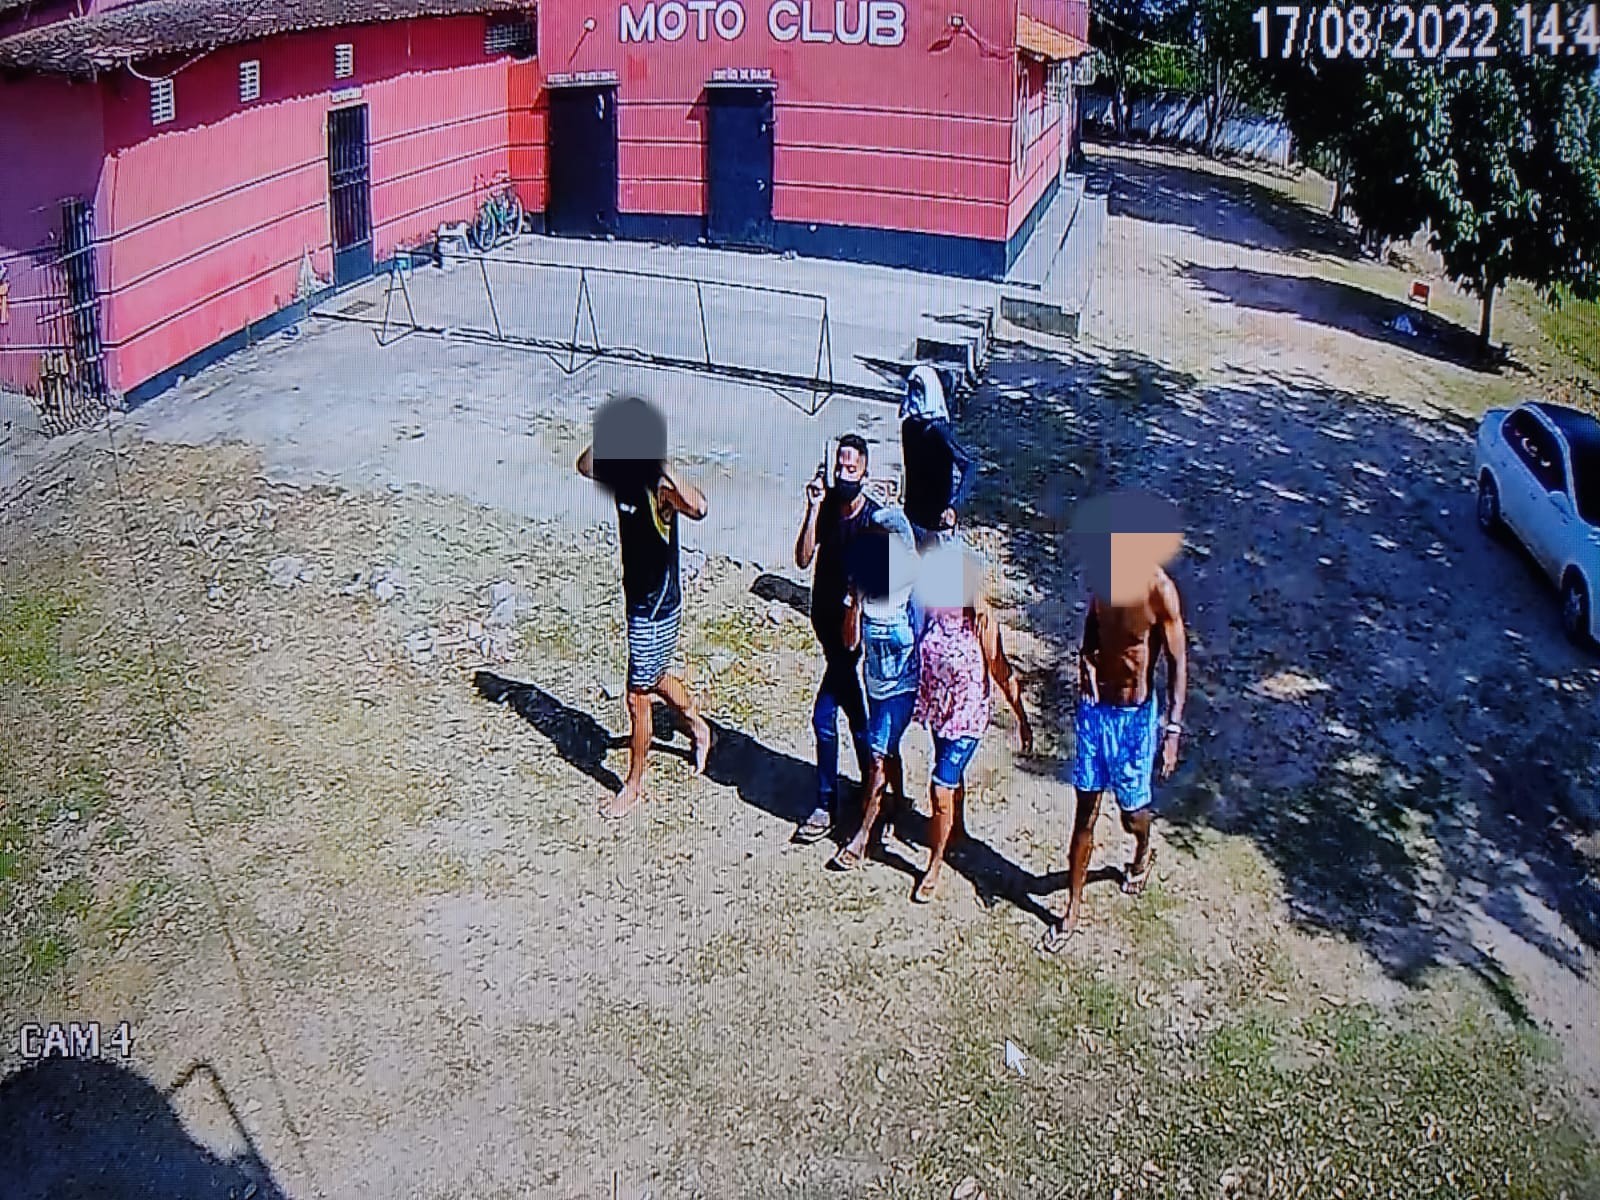 Centro de Treinamento do Moto é invadido e assaltado por criminosos na Grande São Luís; algumas pessoas foram feitas reféns